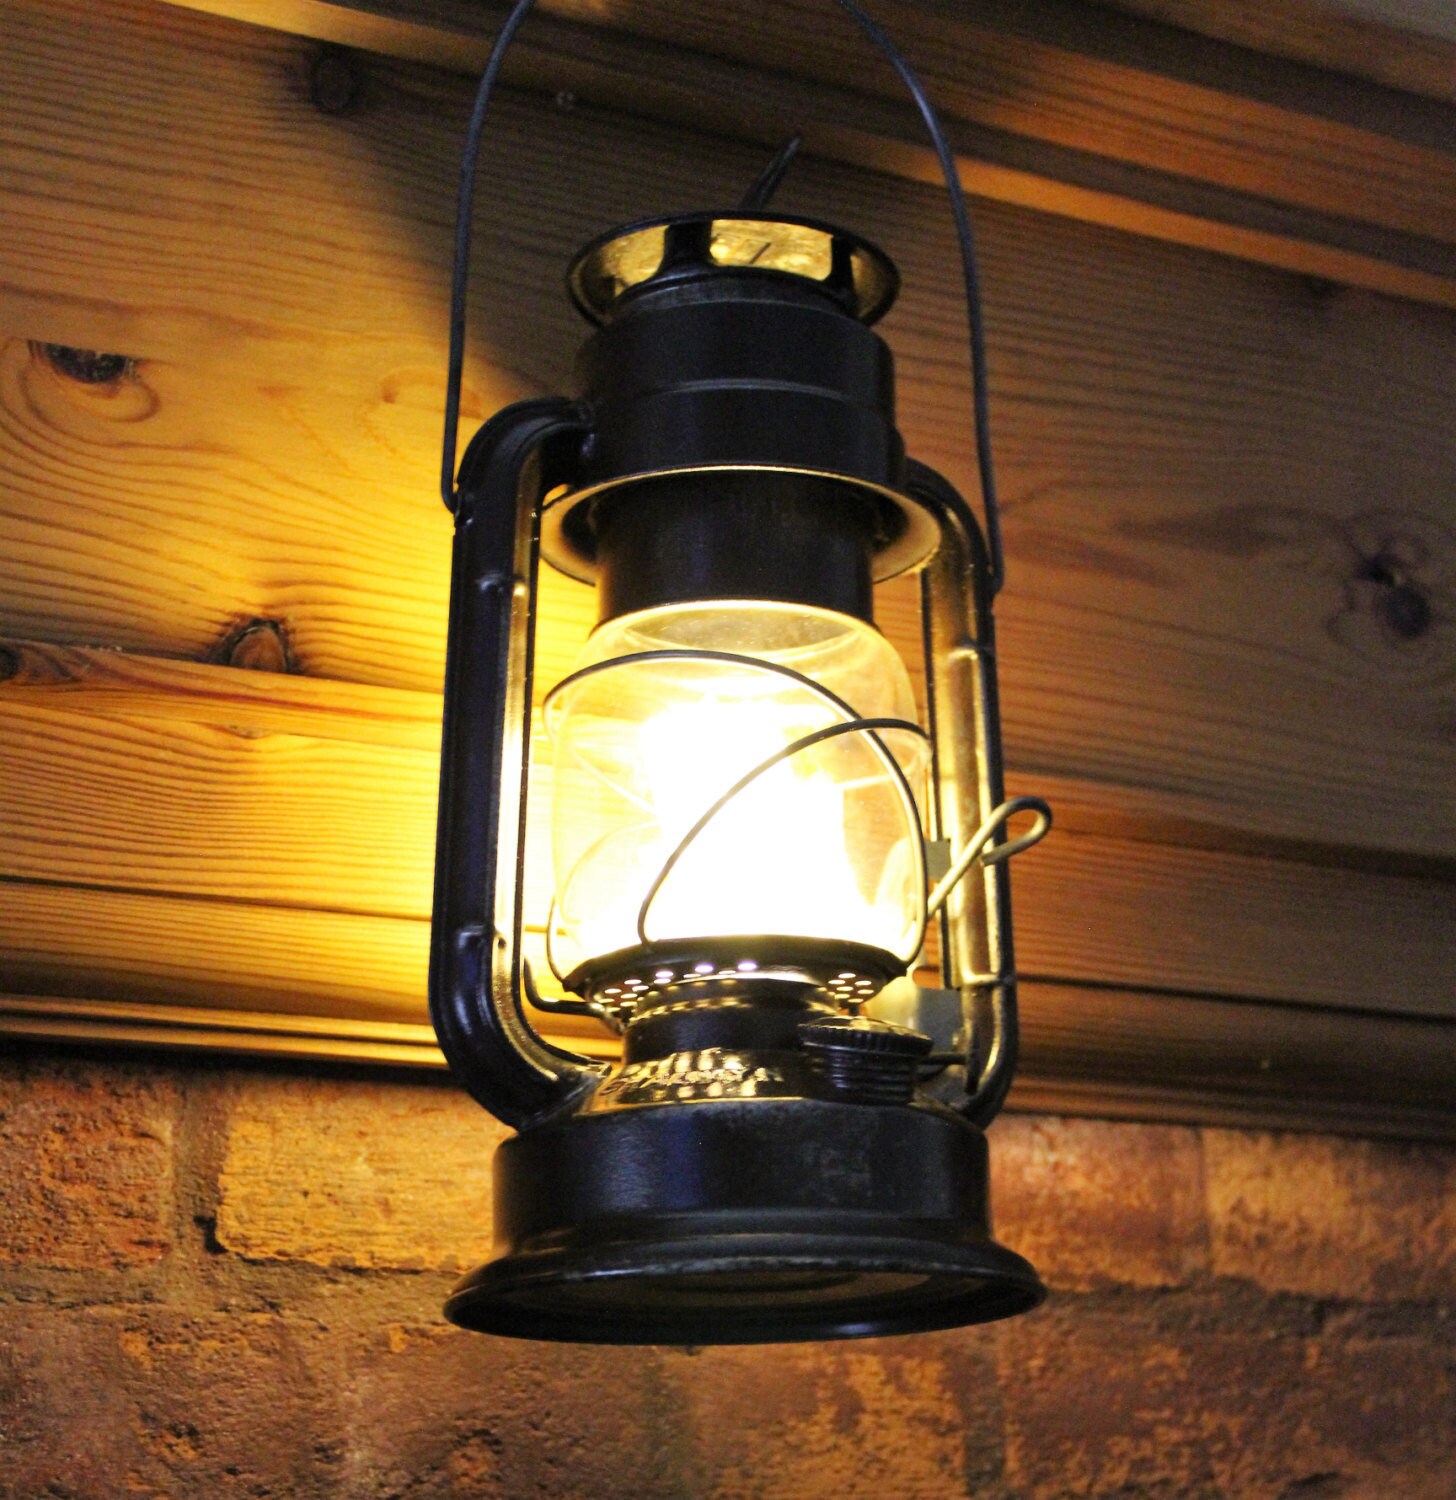 Chalwyn Far East Railway Lantern converted into lamp - Aqua Green